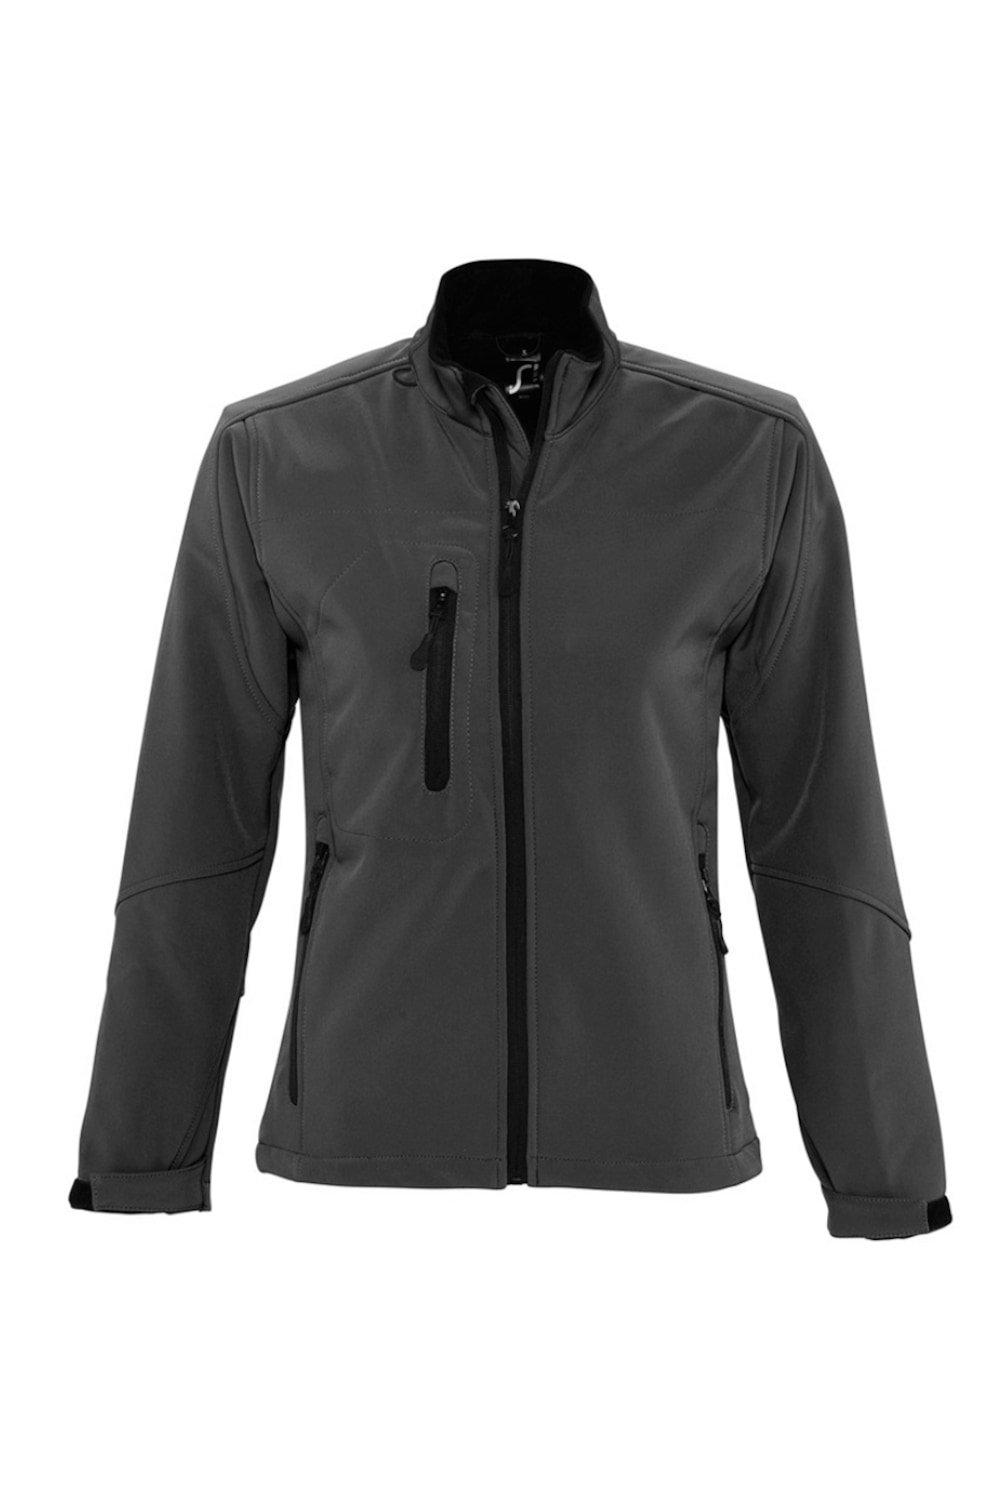 Куртка Roxy Soft Shell (дышащая, ветрозащитная и водостойкая) SOL'S, серый